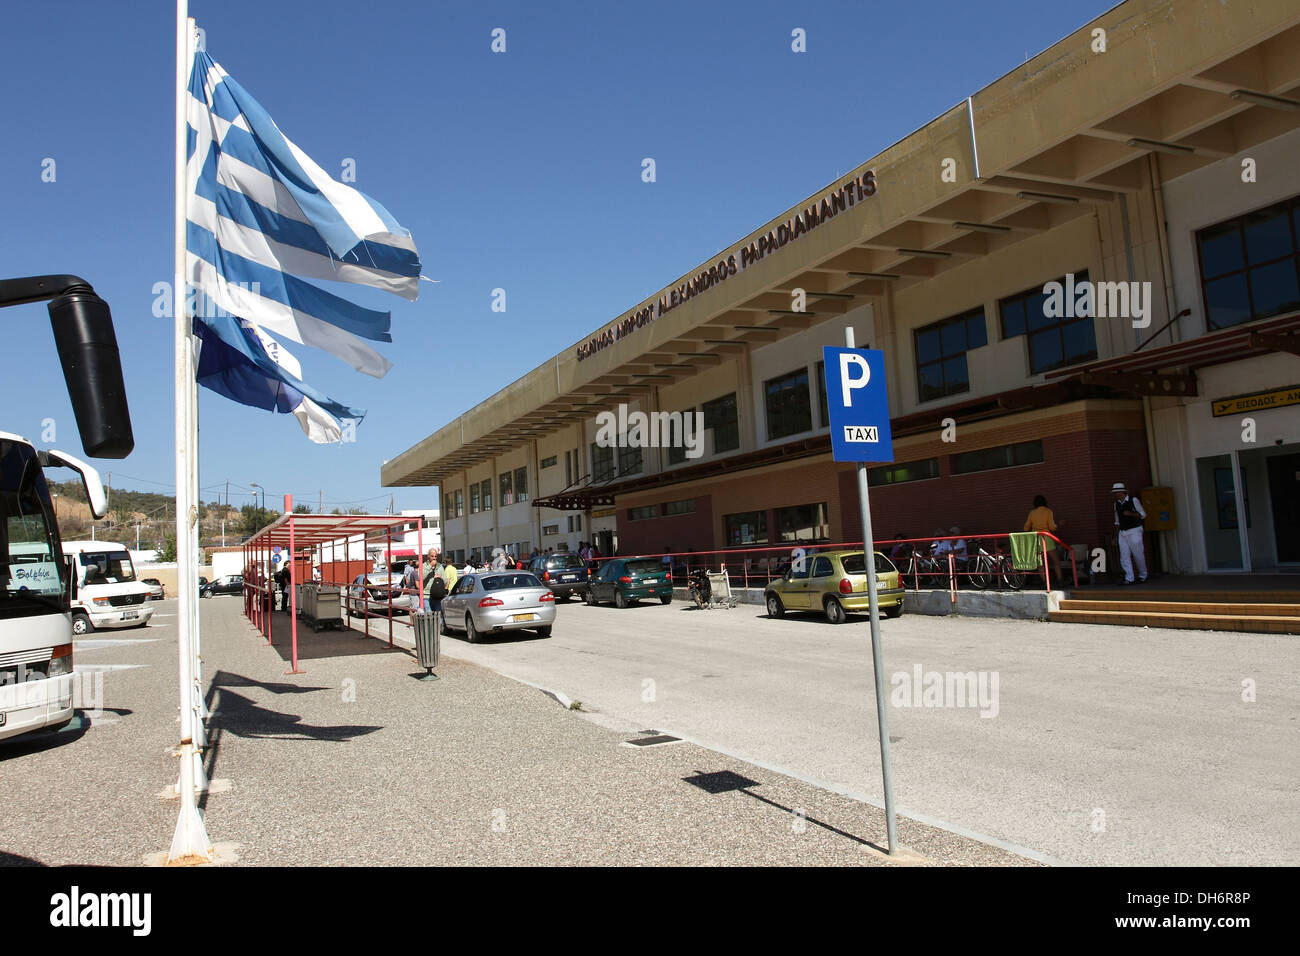 Alexandros Papadiamantis Airport on the Greek Island of Skiathos,a popular tourist destination in the Aegean Sea. Stock Photo